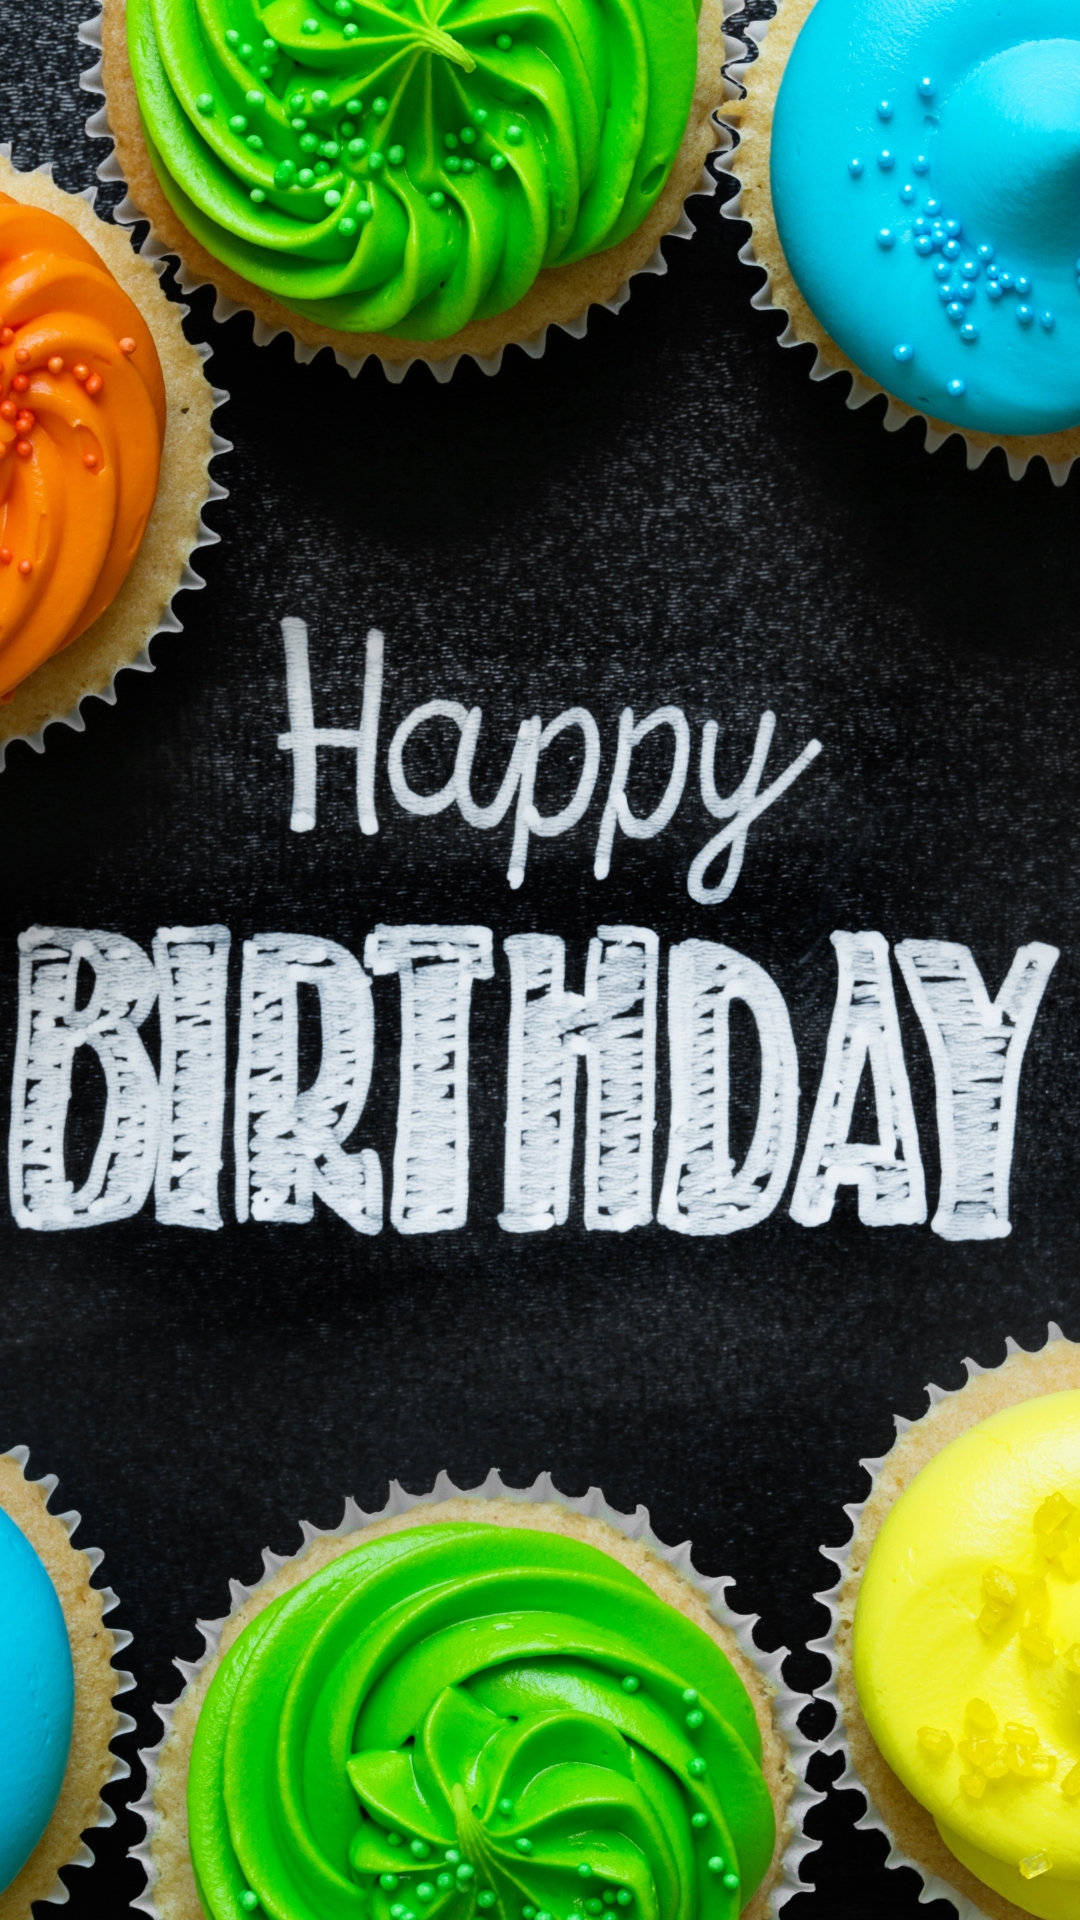 無料モバイル壁紙色, カップケーキ, 誕生日, ホリデー, 誕生日おめでとうをダウンロードします。